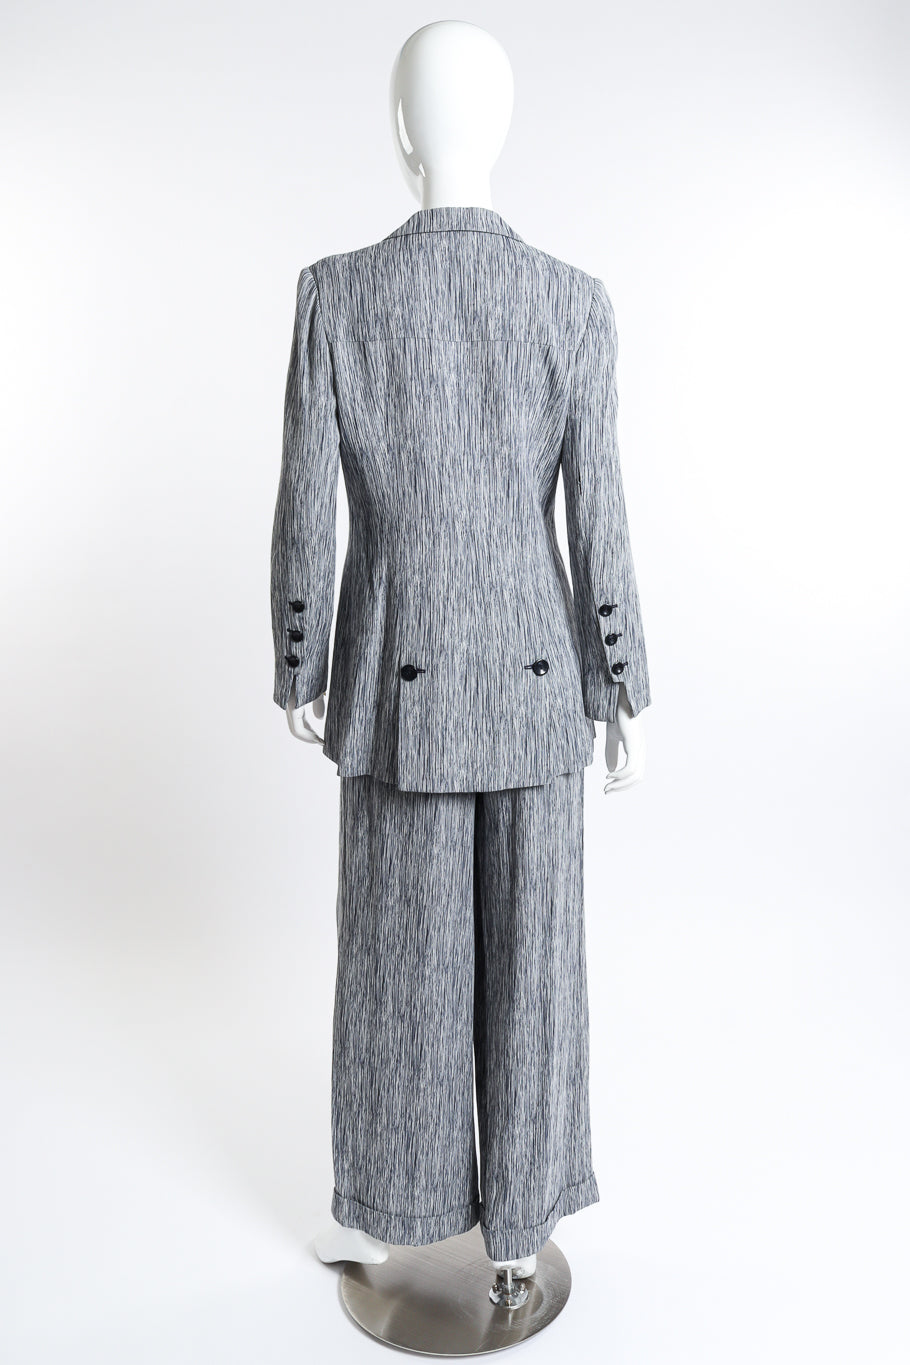 Chloé Woodgrain Stripe Jacket & Pant Set back on mannequin @recess la